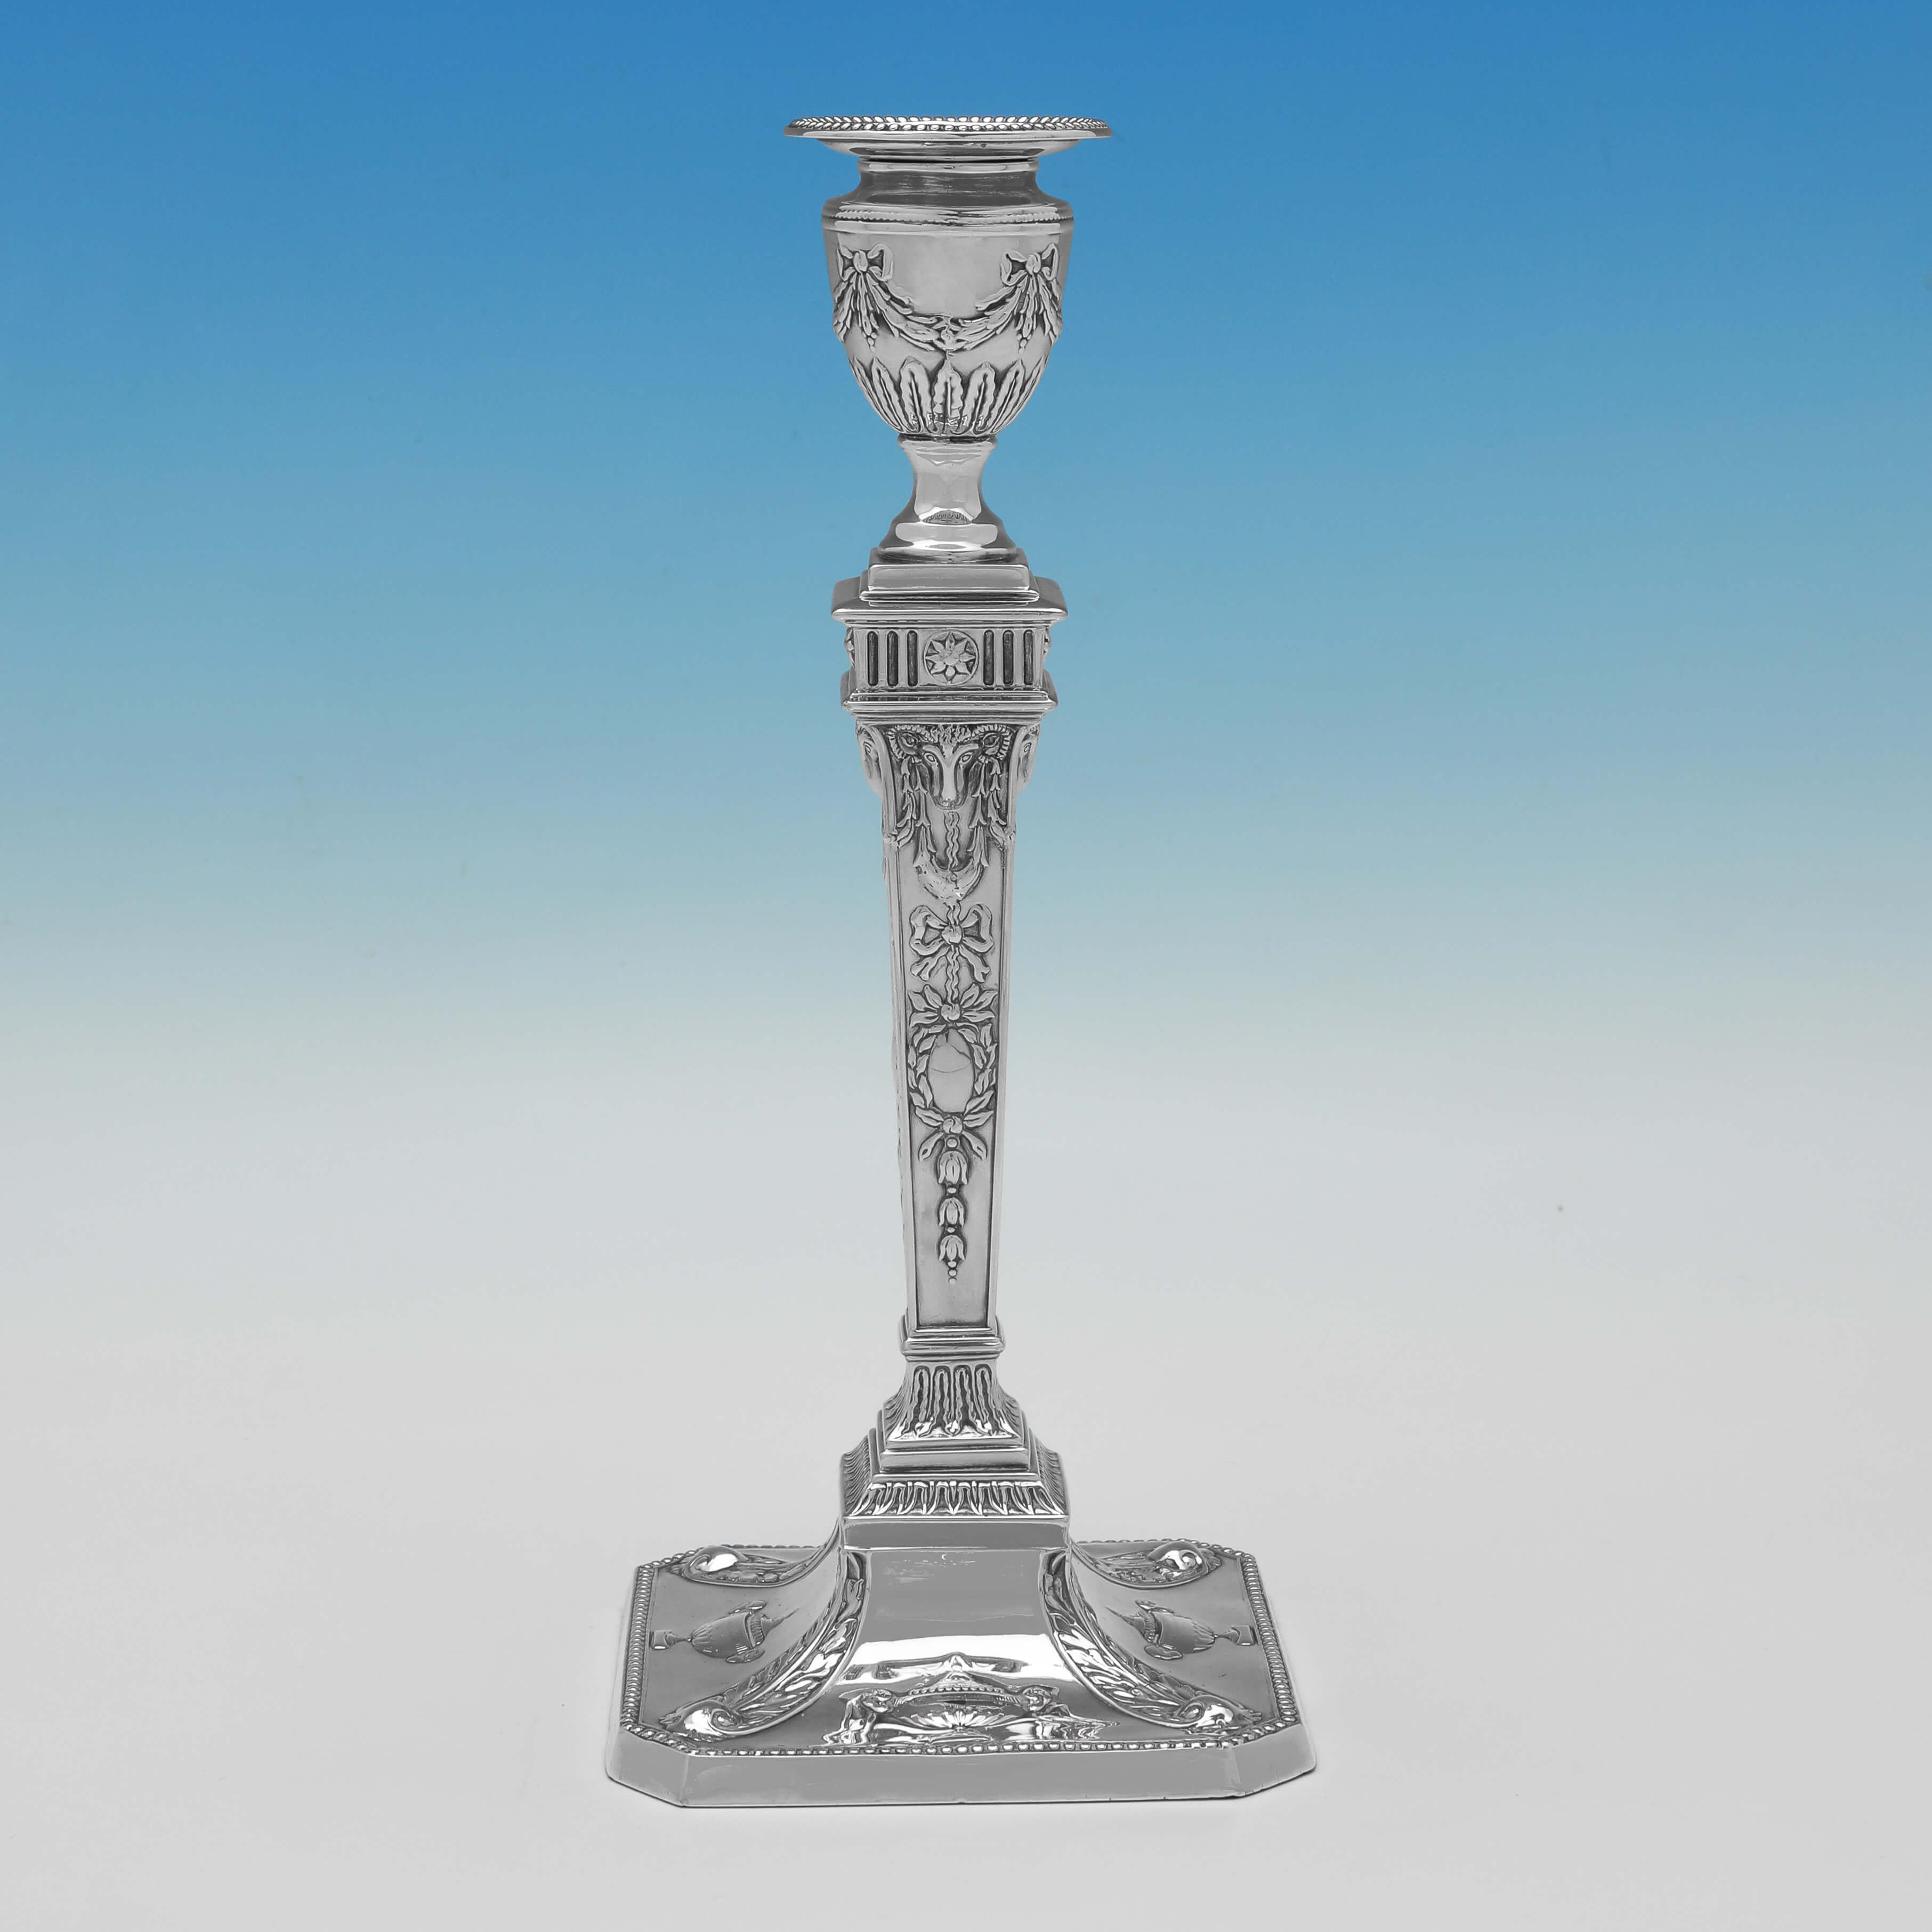 Signée à Sheffield en 1899 par John & William Deakin, cette paire de chandeliers victoriens en argent sterling antique est de style Adam. 

Chaque chandelier mesure 26 cm de haut, 11 cm de large et 11 cm de profondeur. Les chandeliers sont remplis